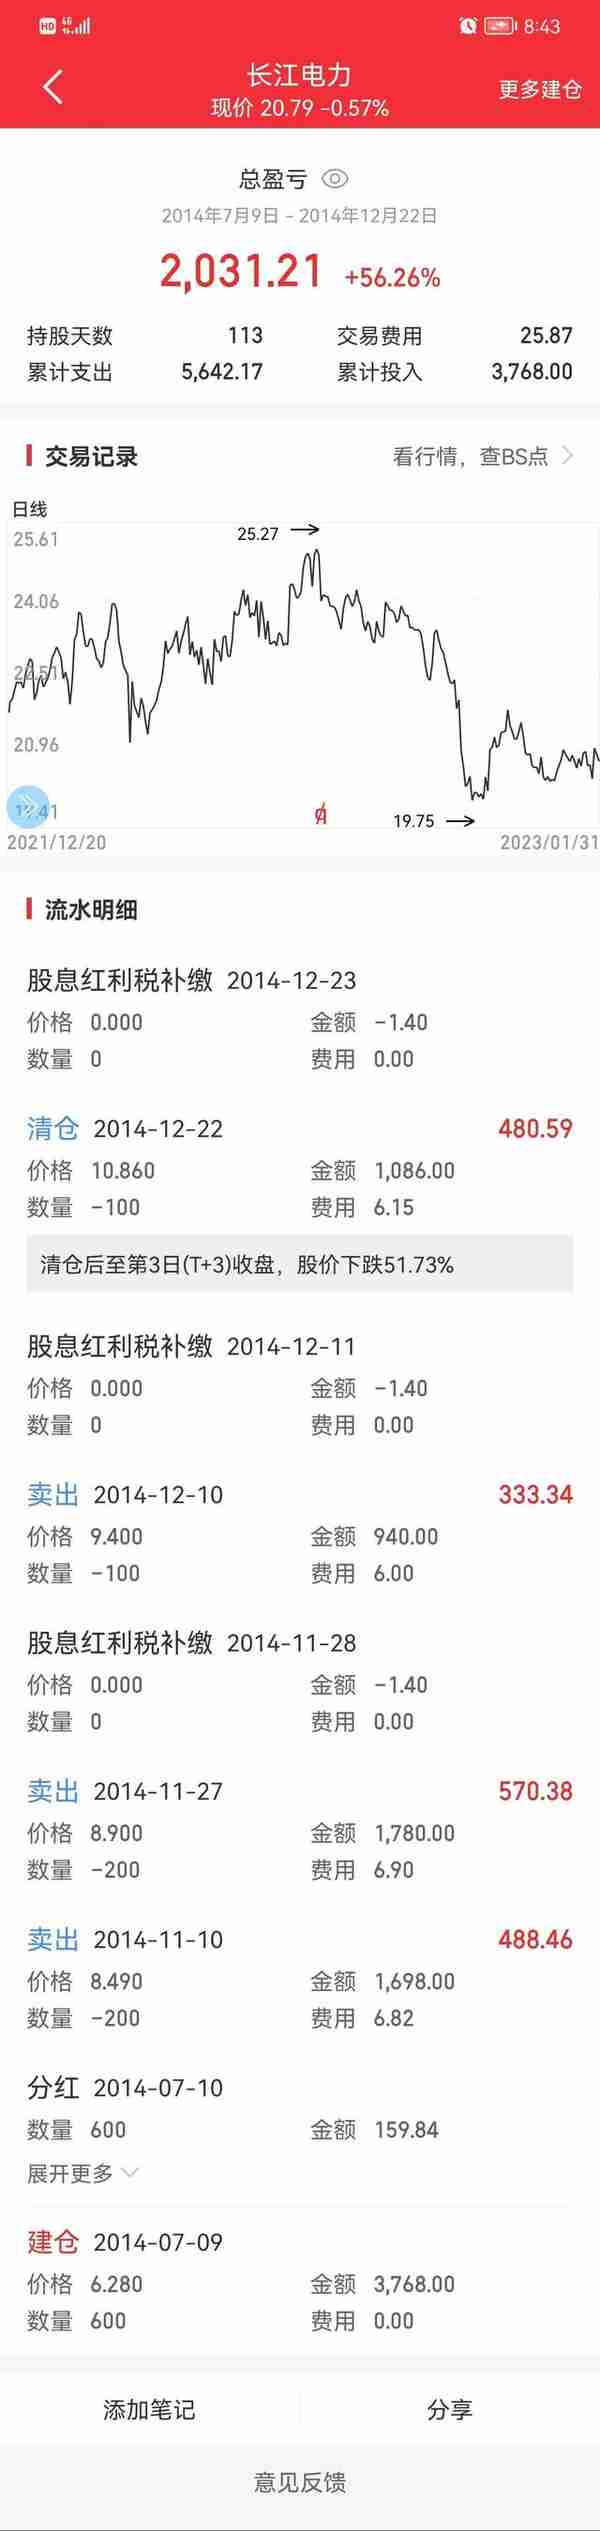 分享2014年投资长江电力 买入好股票容易，长期守股很难